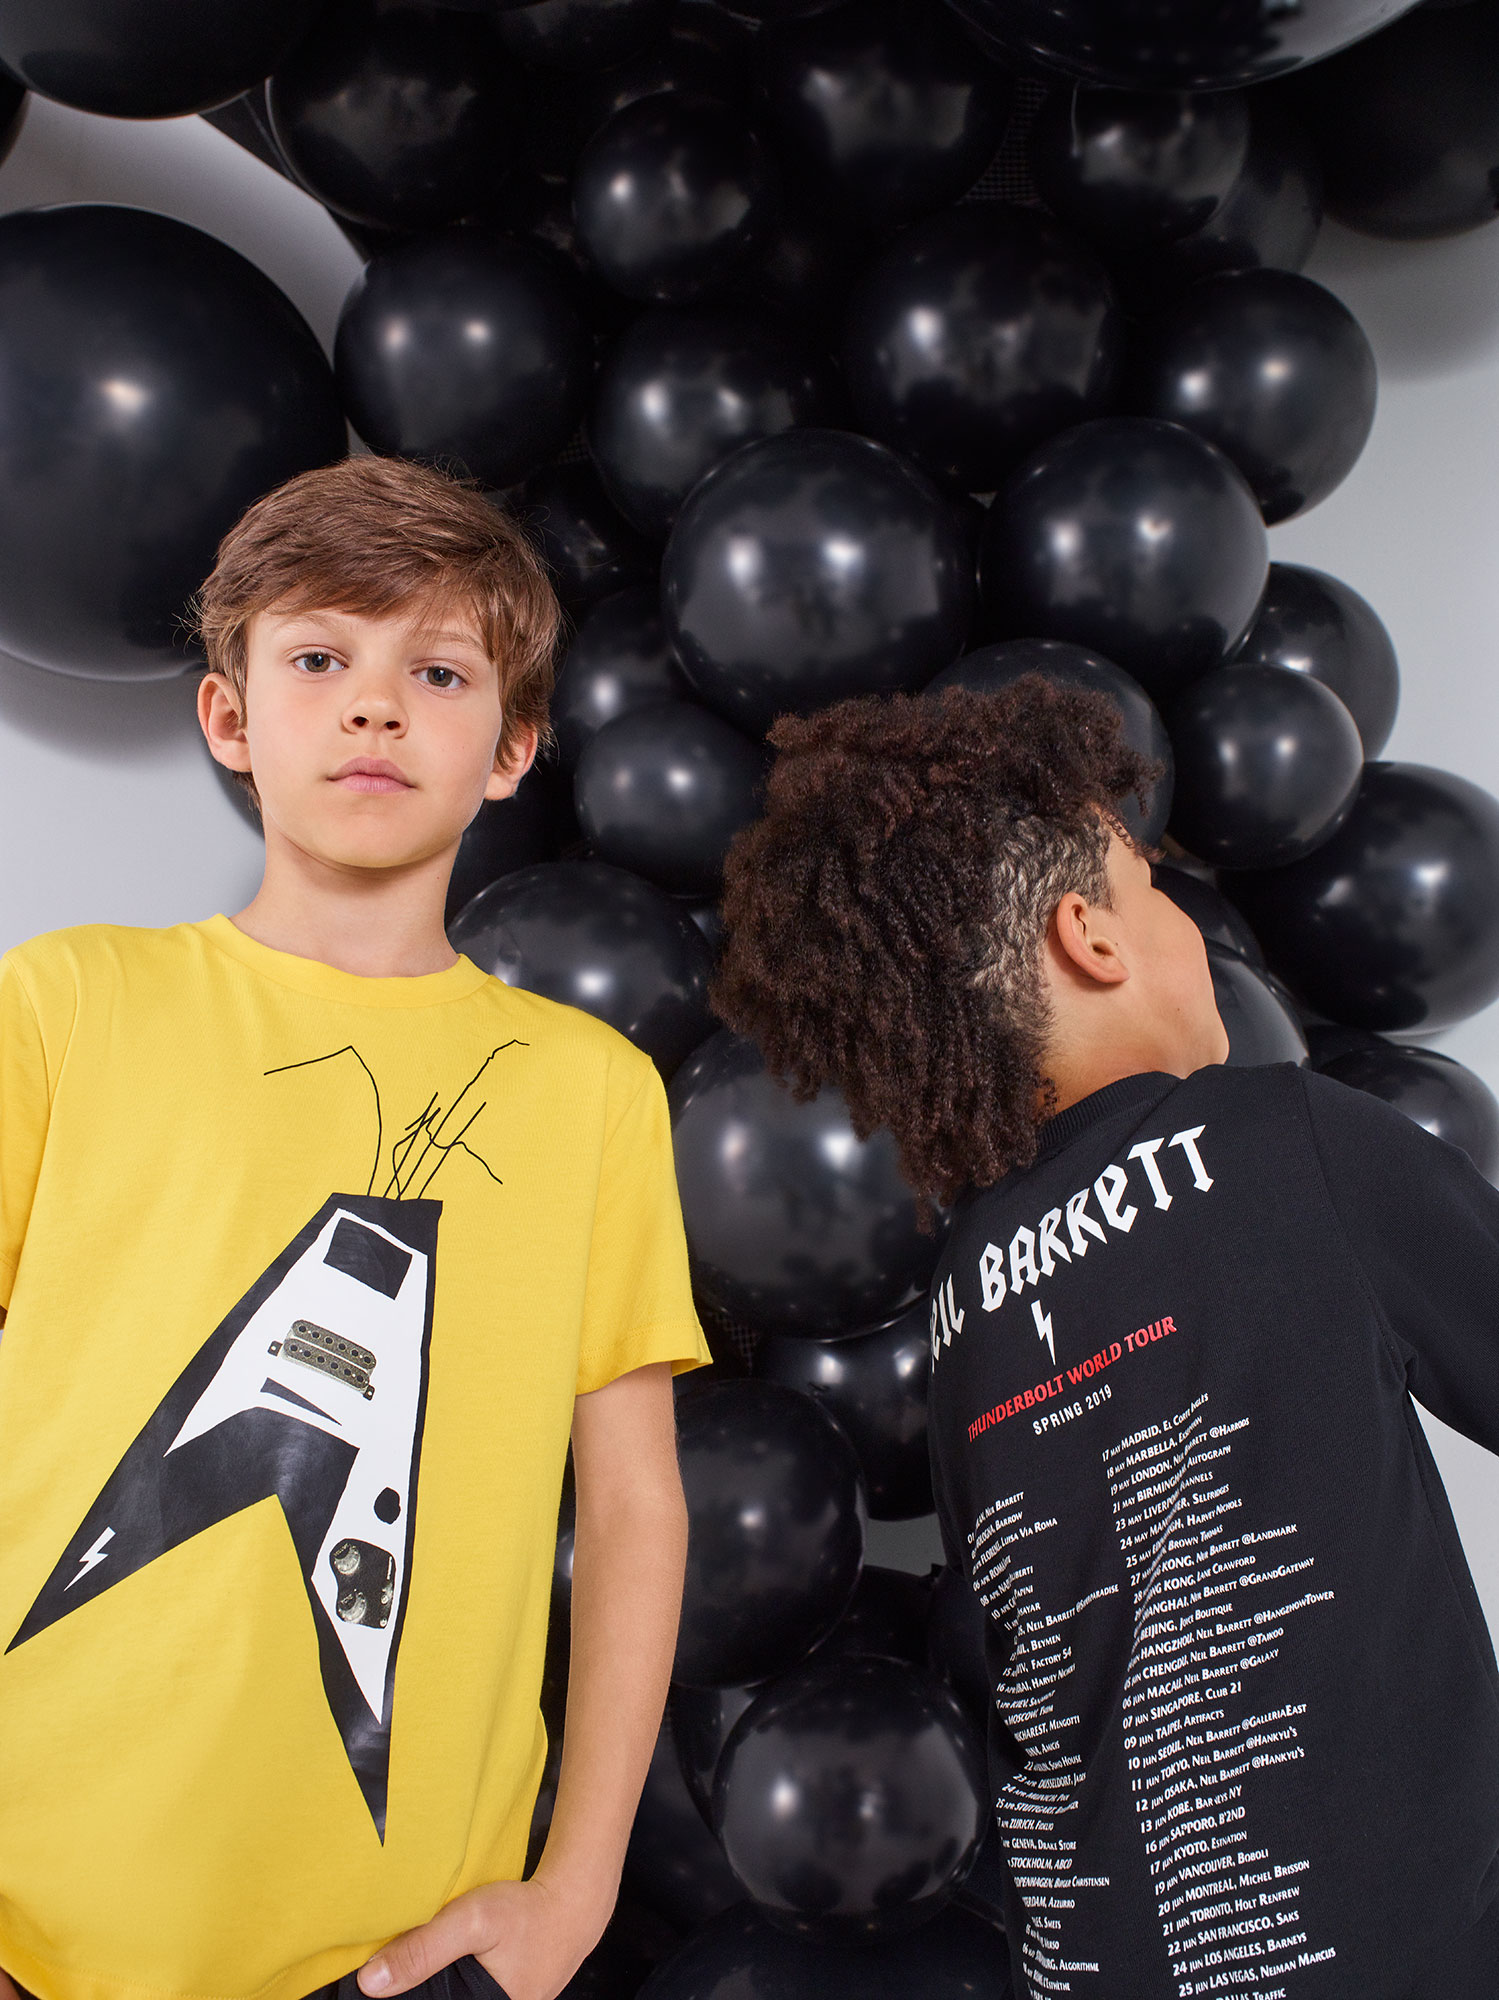 Neil Barrett Kids 2018 | Diego Diaz | Neil Barrett | Numerique Retouch Photo Retouching Studio